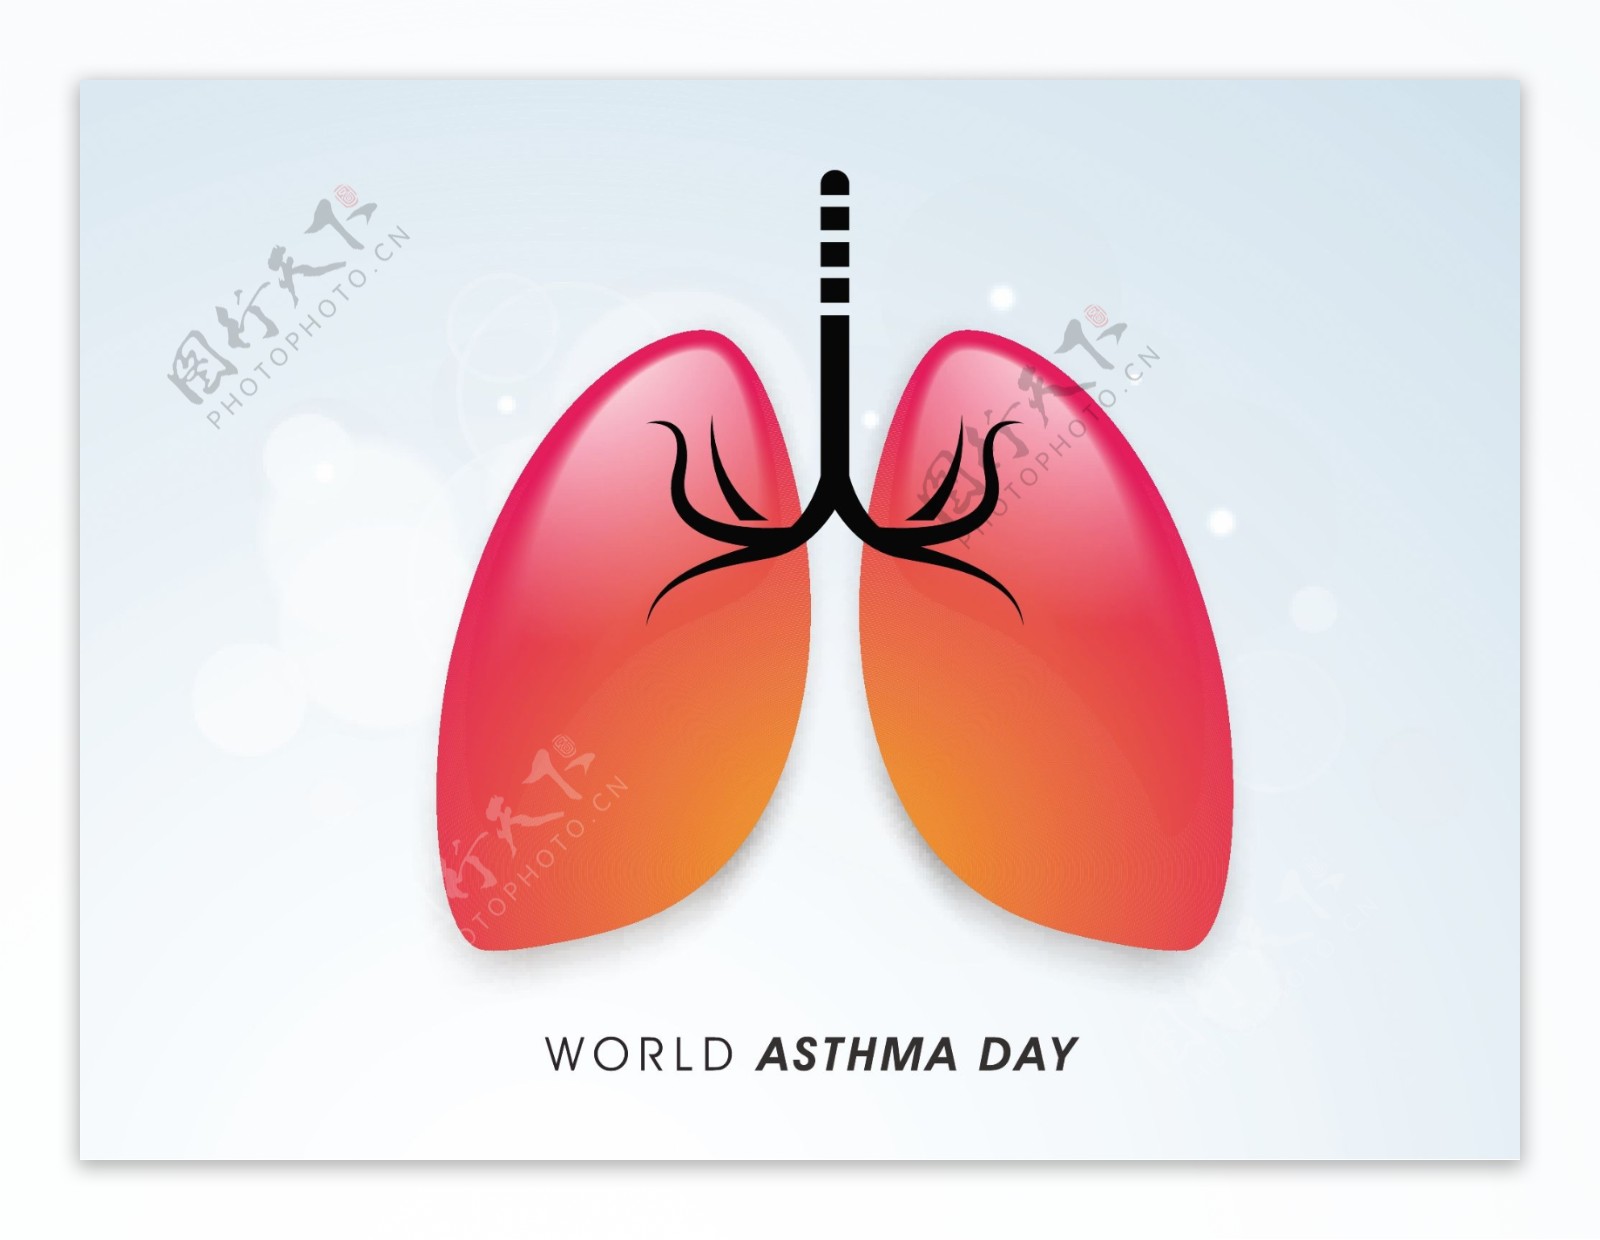 世界哮喘日肺粉红色矢量